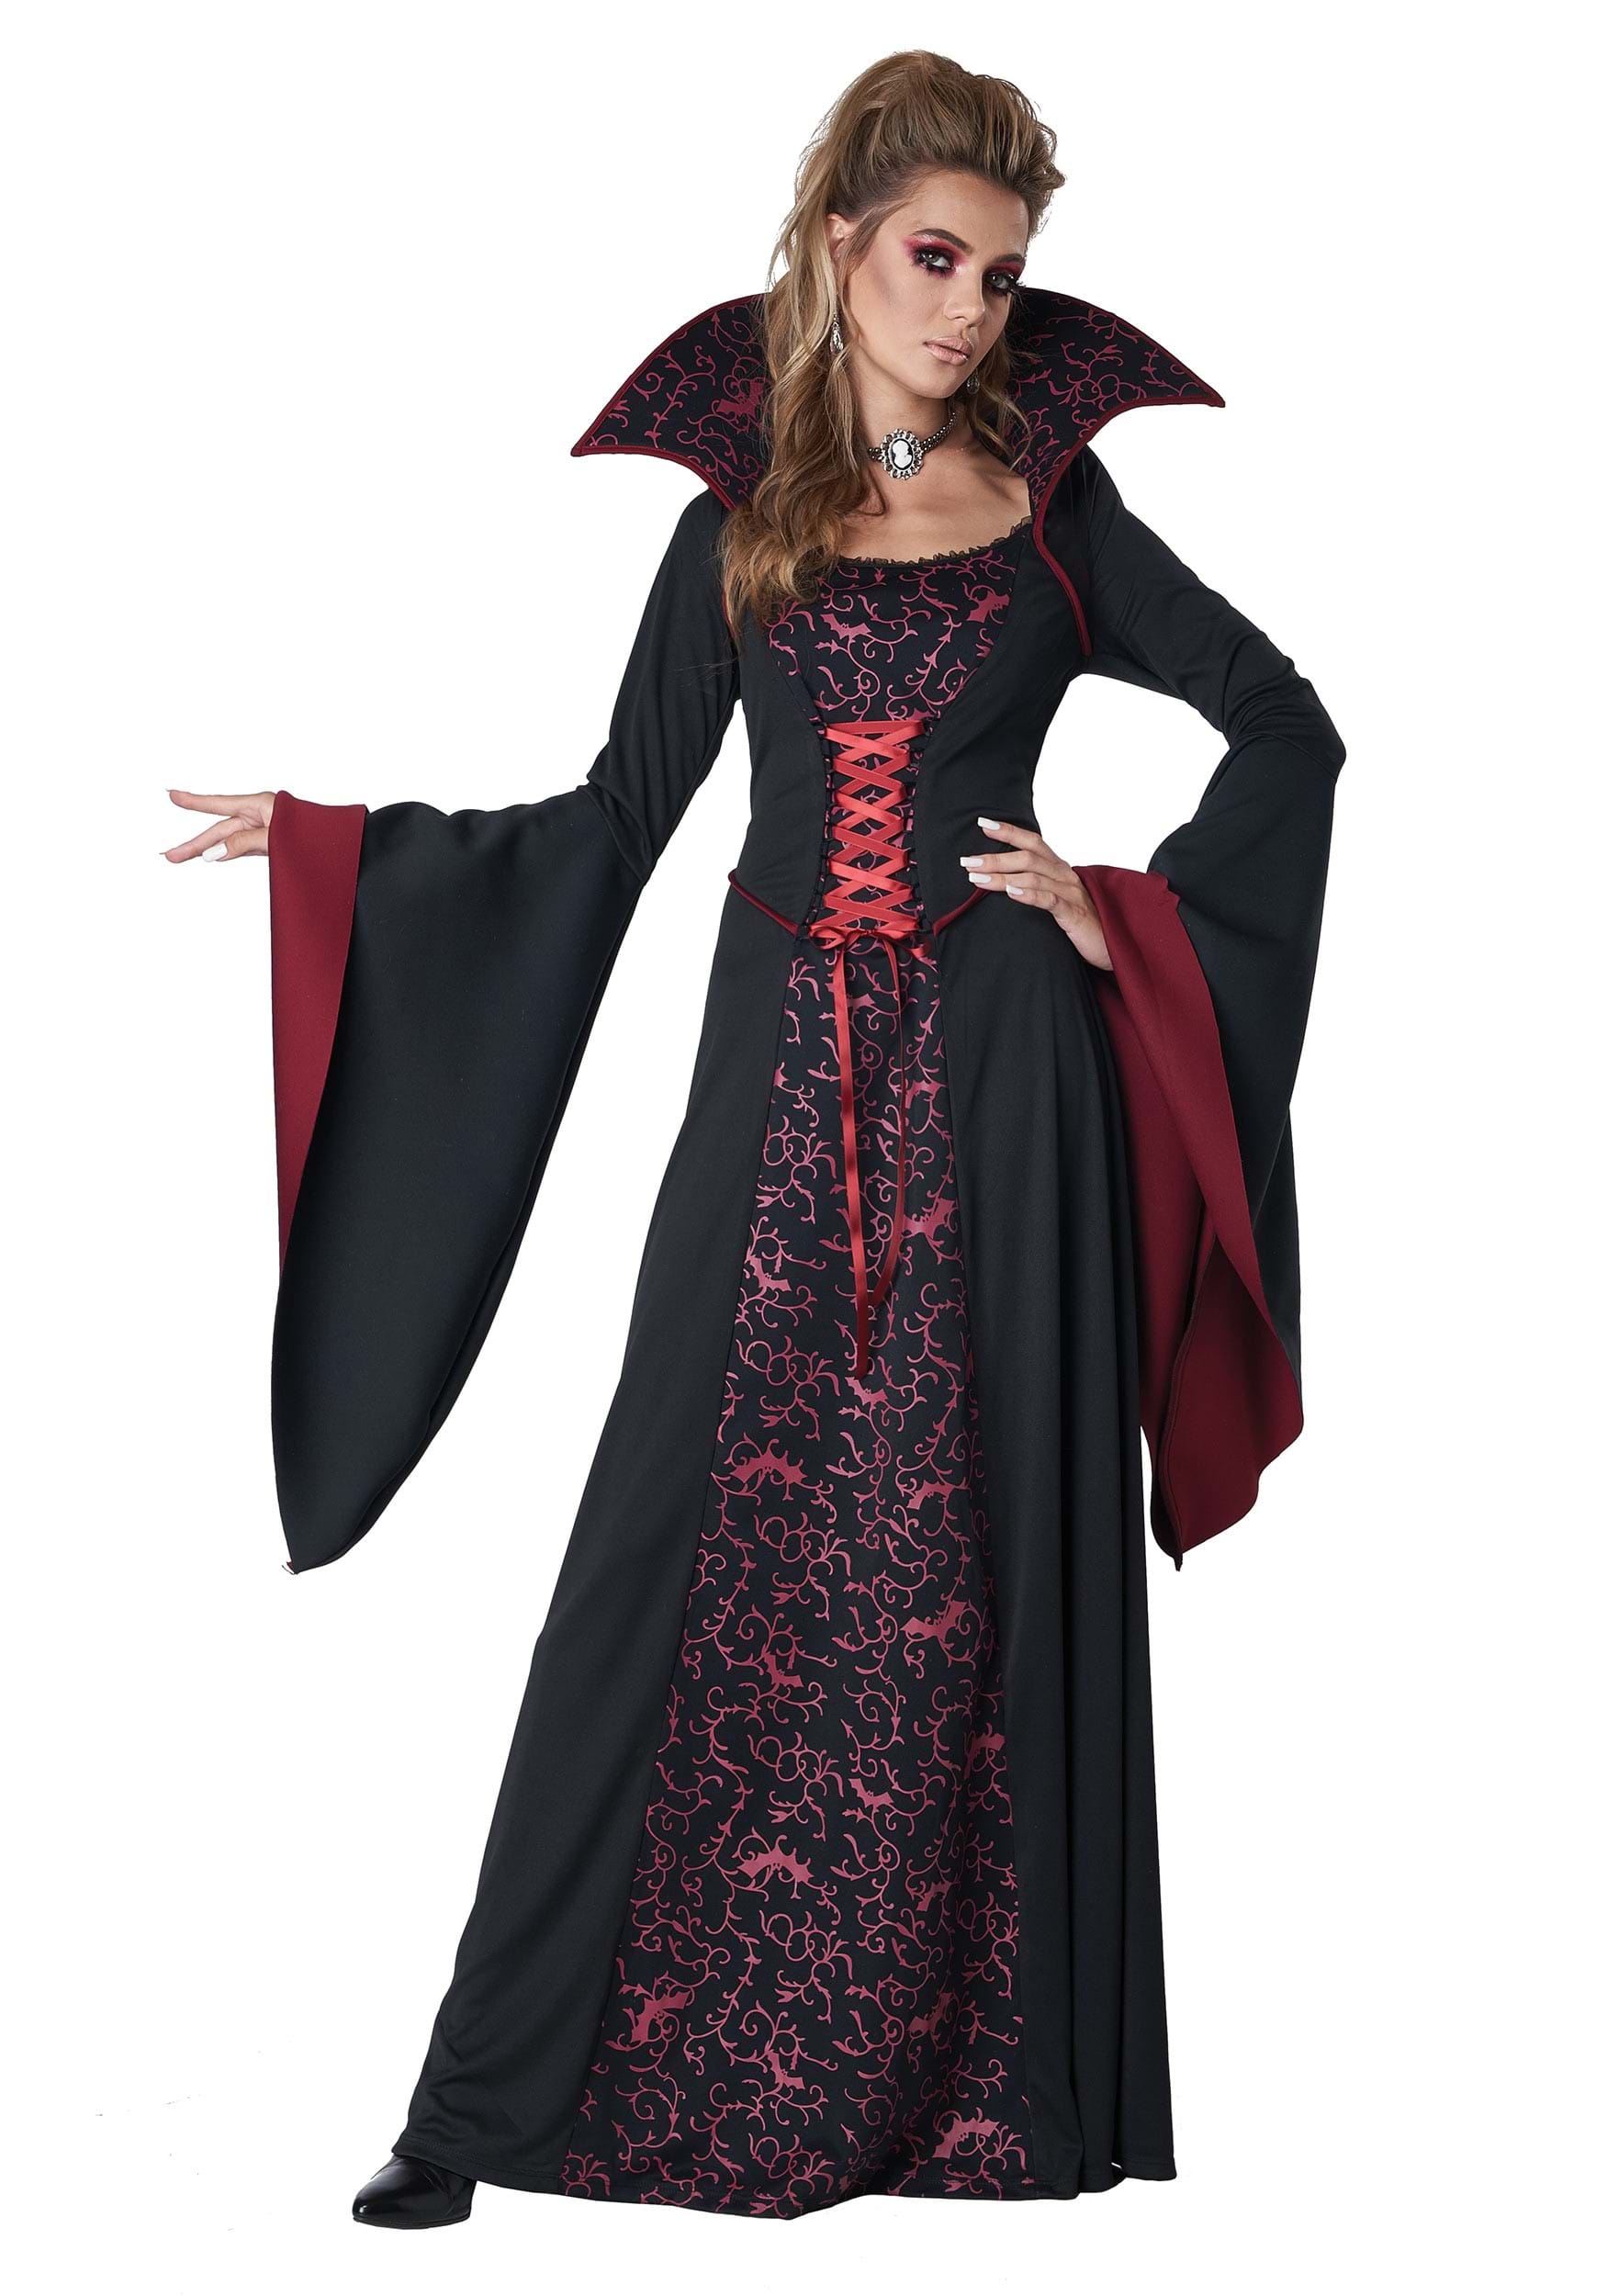 Women's Royal Vampire Costume